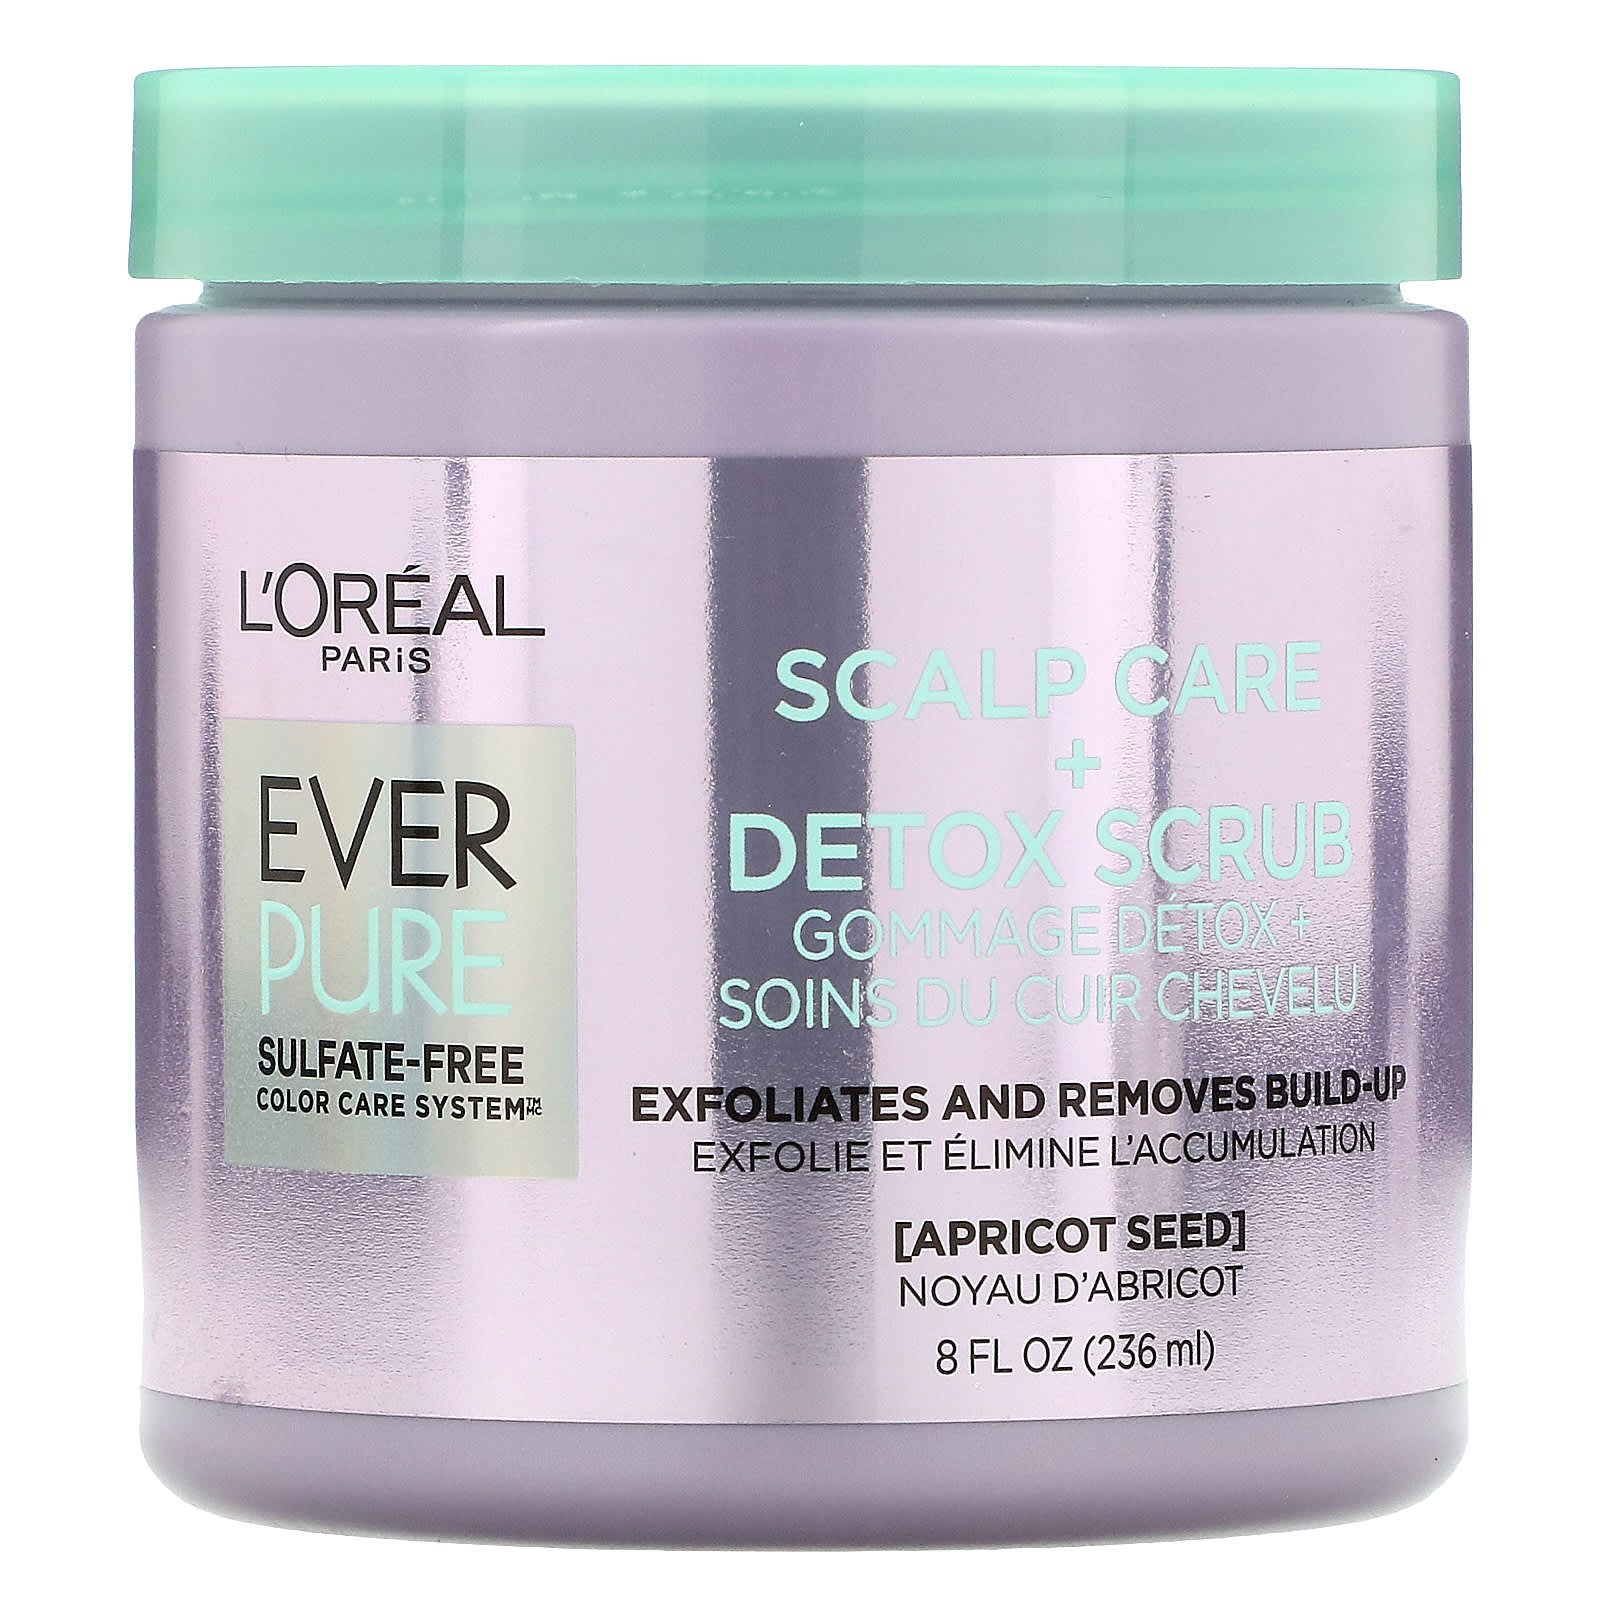 L'Oreal, Ever Pure, Scalp Care + Detox Scrub